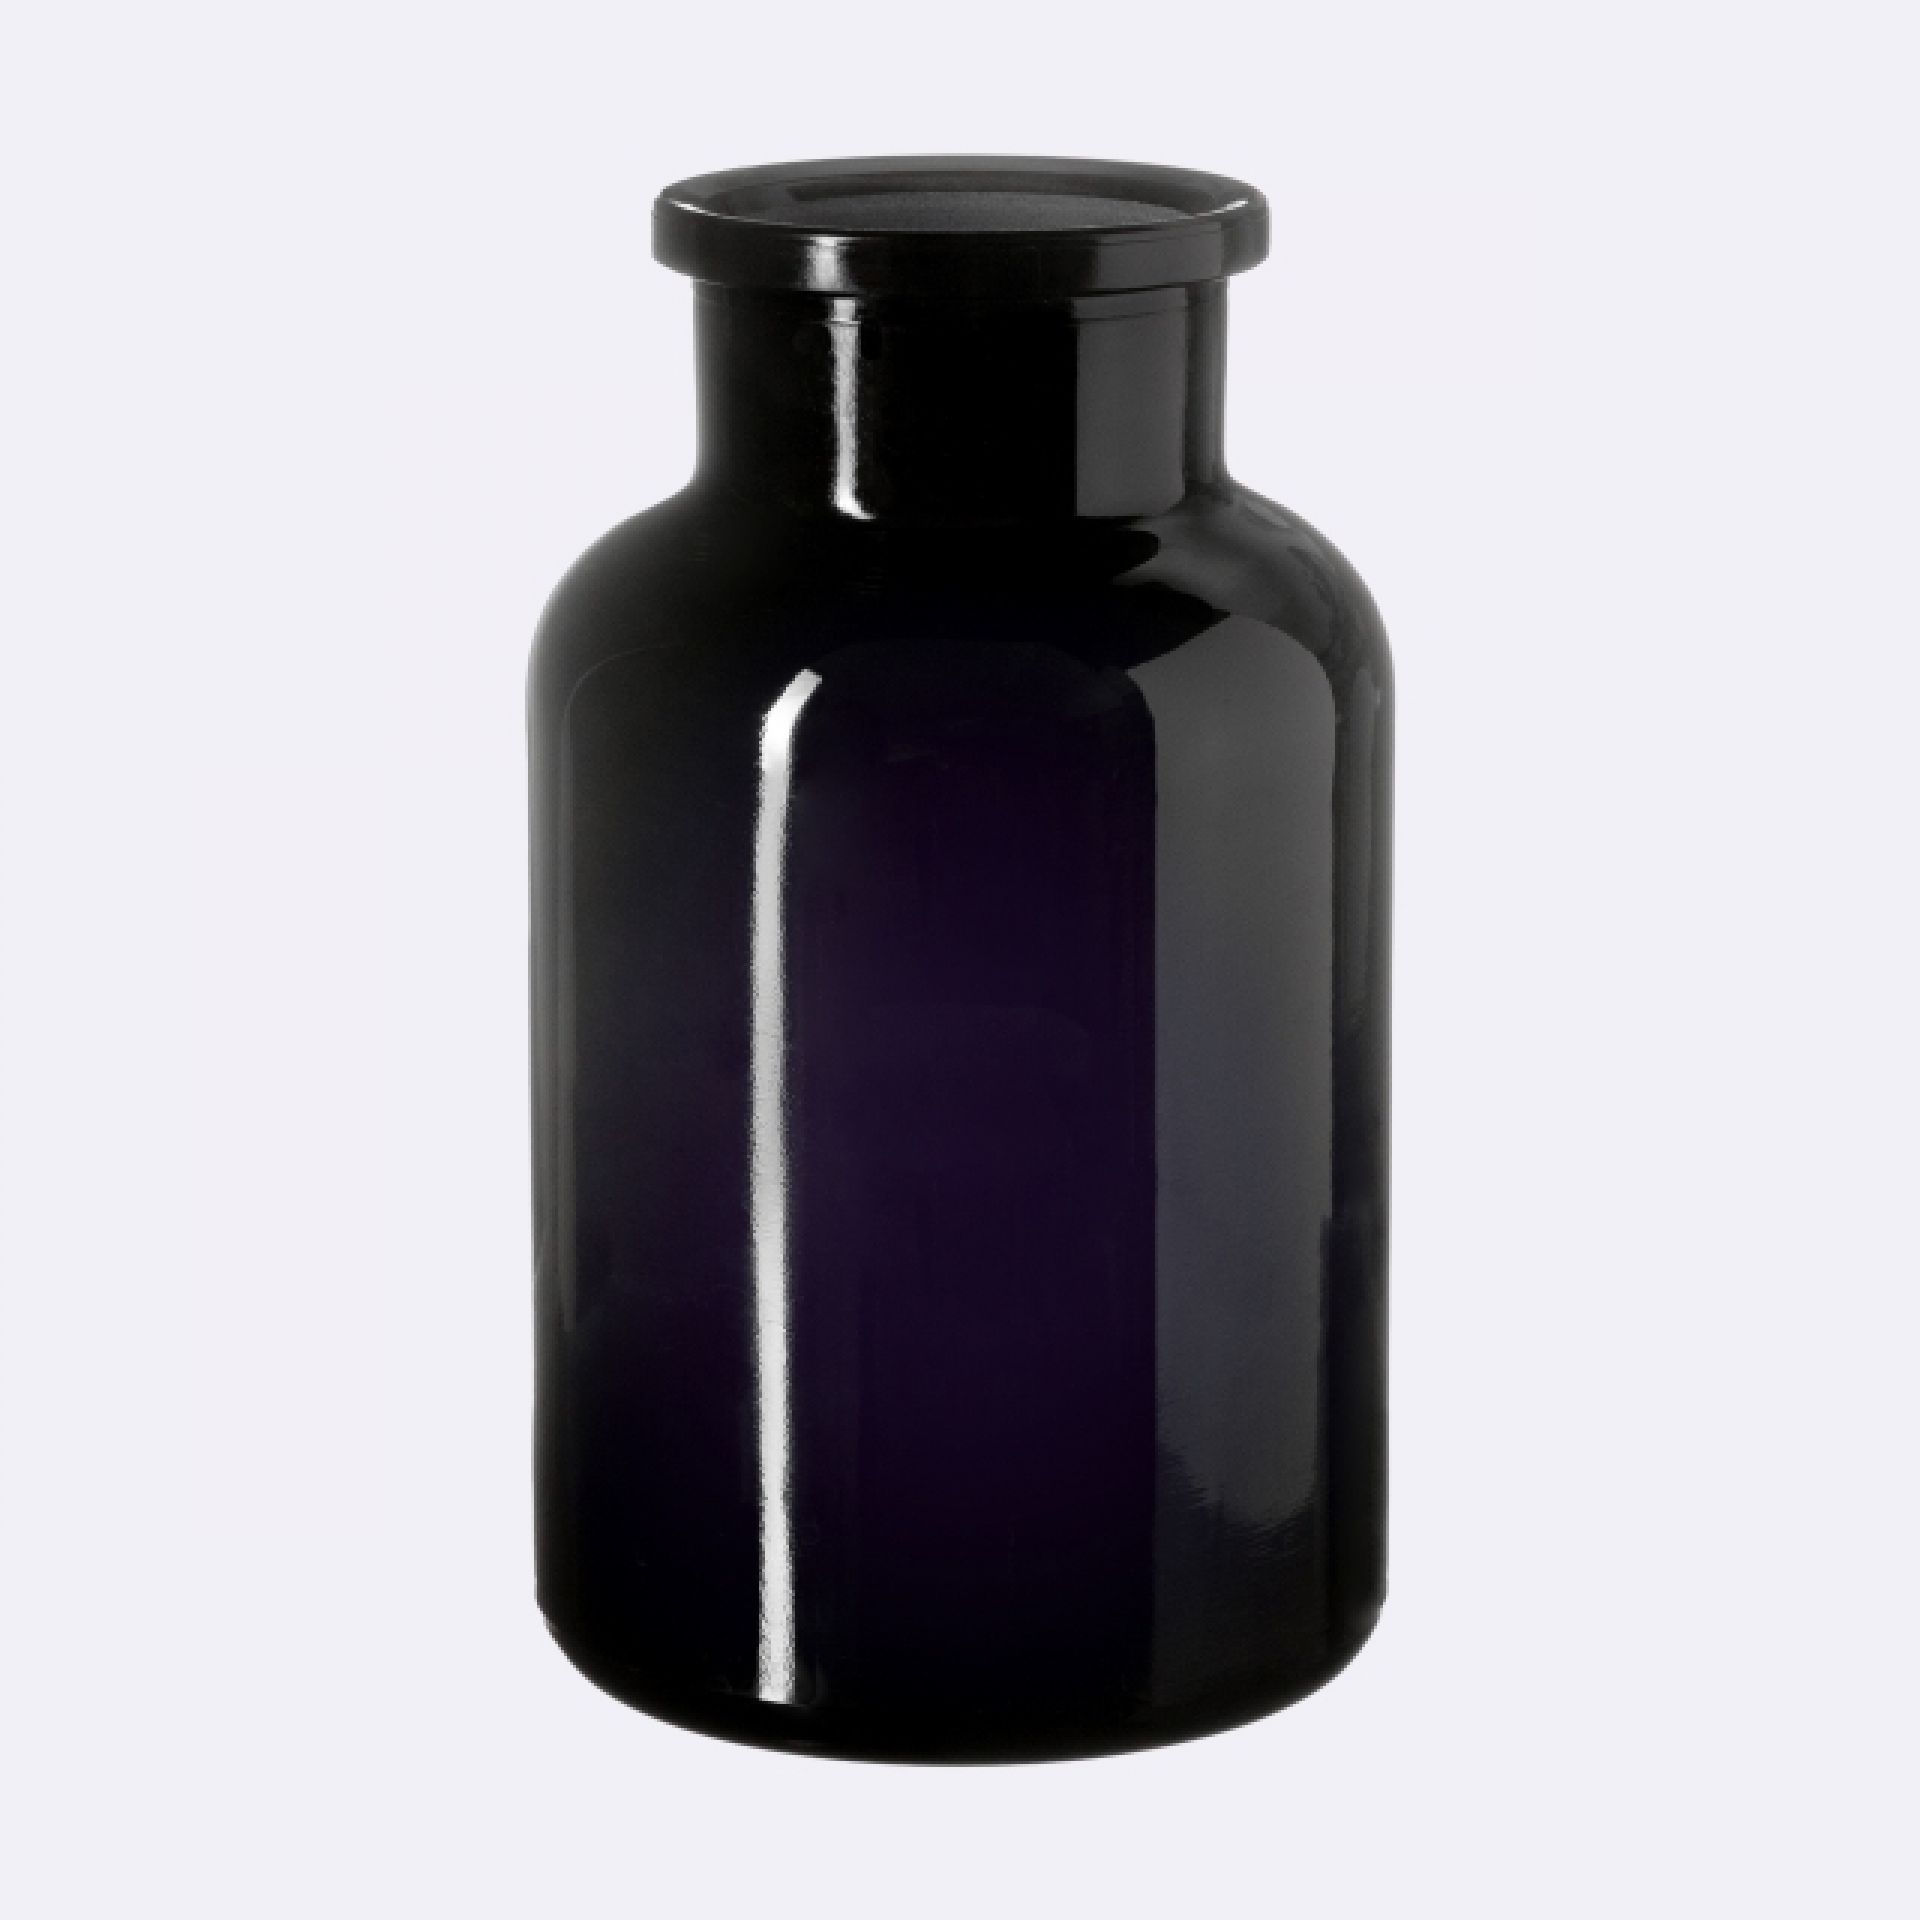 Apothecary jar Libra 1000ml, glass stopper, Miron